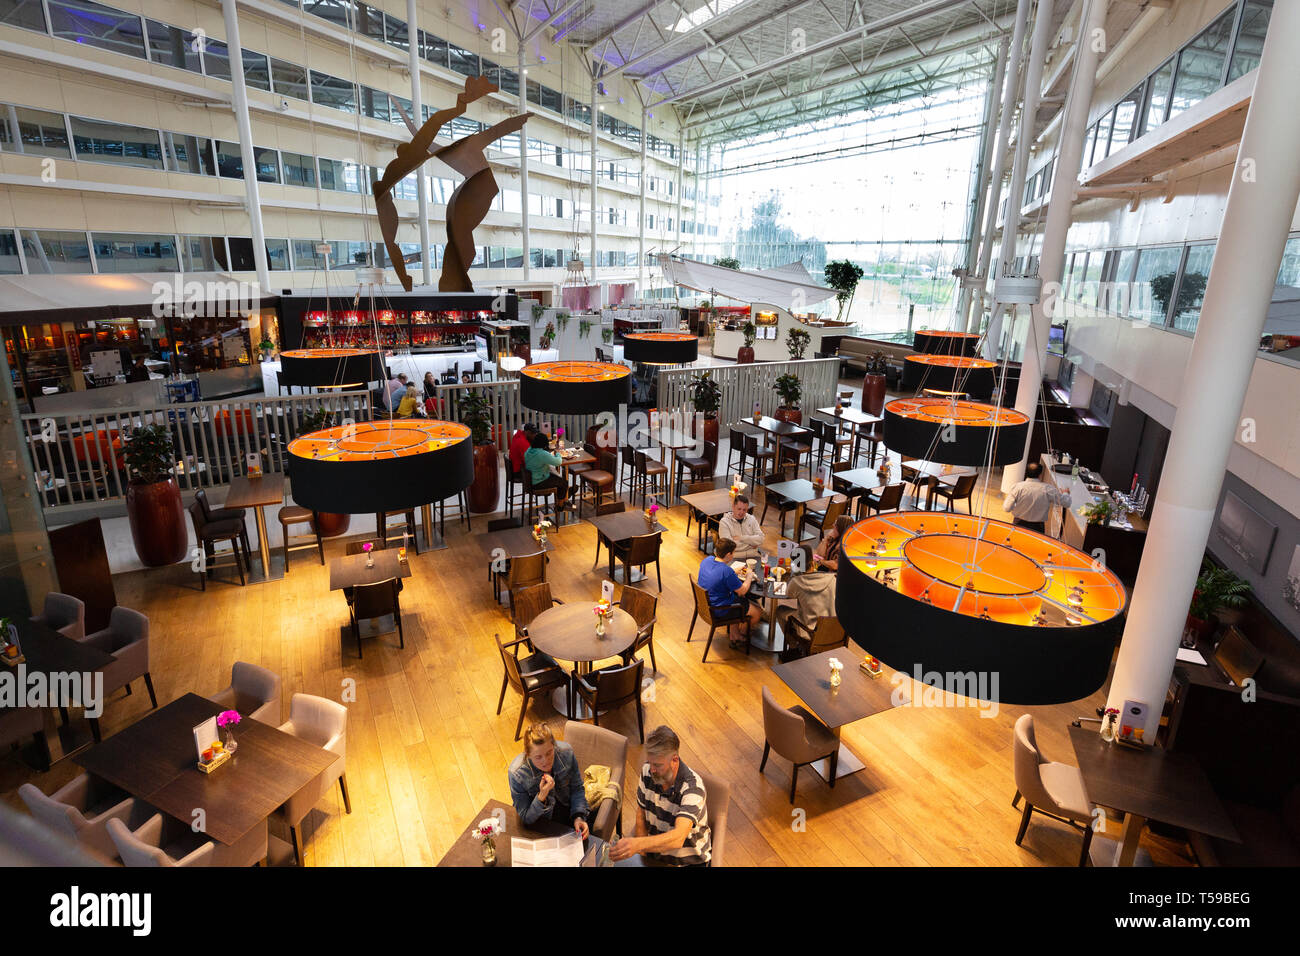 Restaurants et bars de l'intérieur ; l'hôtel Hilton de l'aéroport de Heathrow London UK Banque D'Images